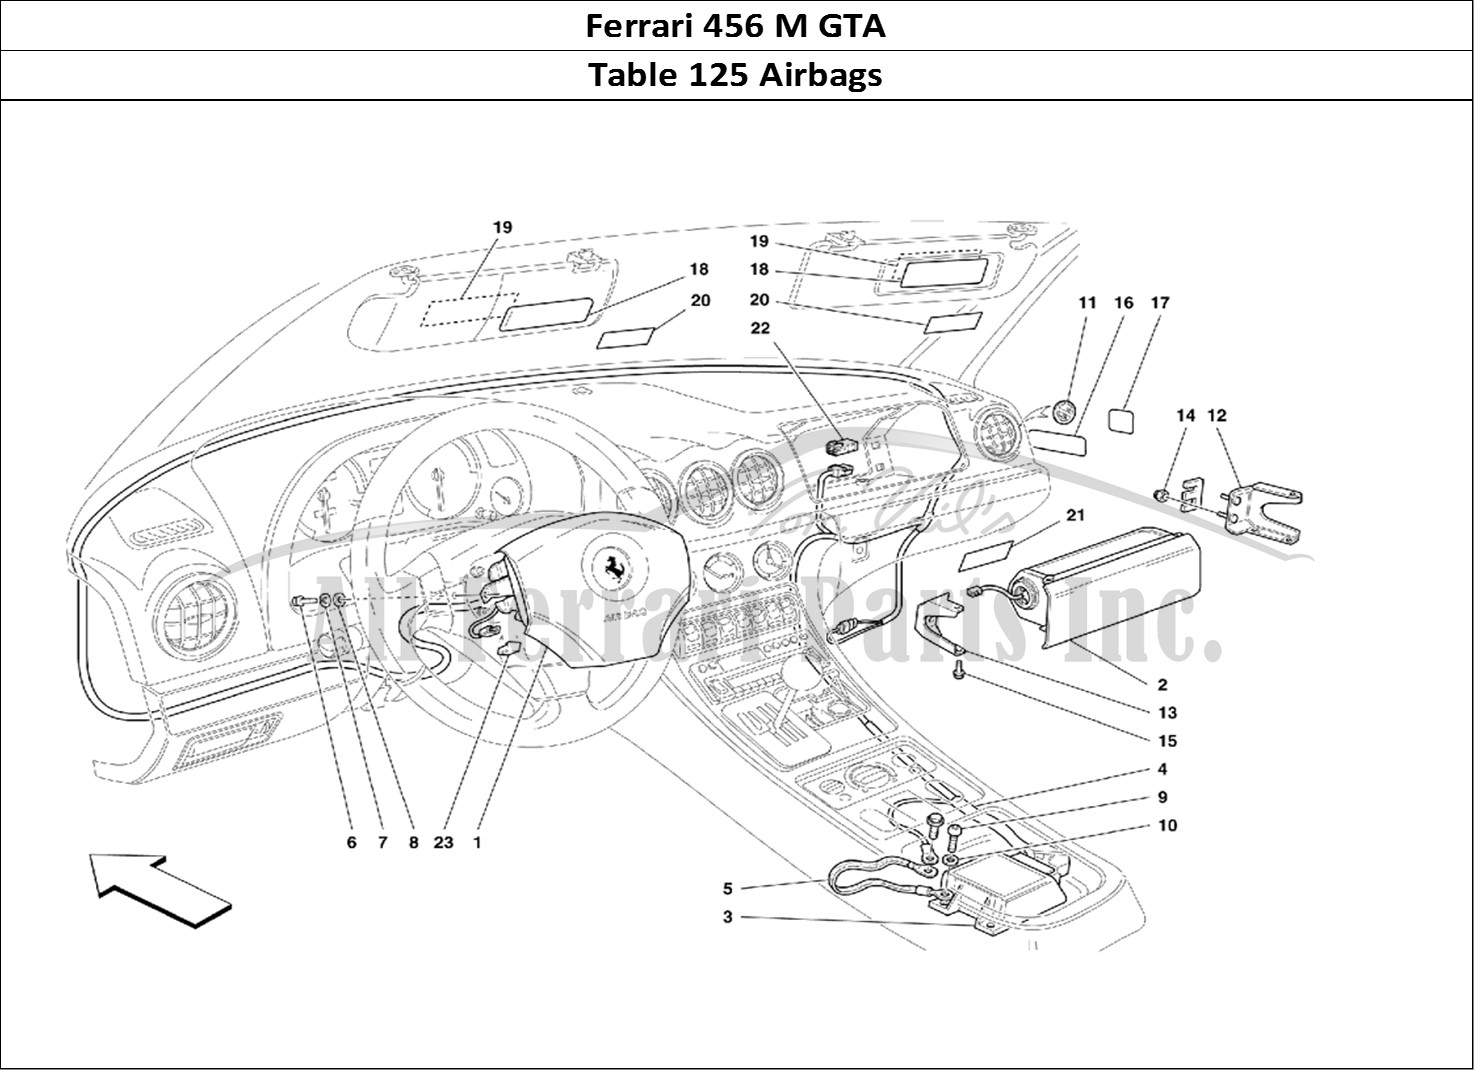 Ferrari Parts Ferrari 456 M GT Page 125 Air-Bags